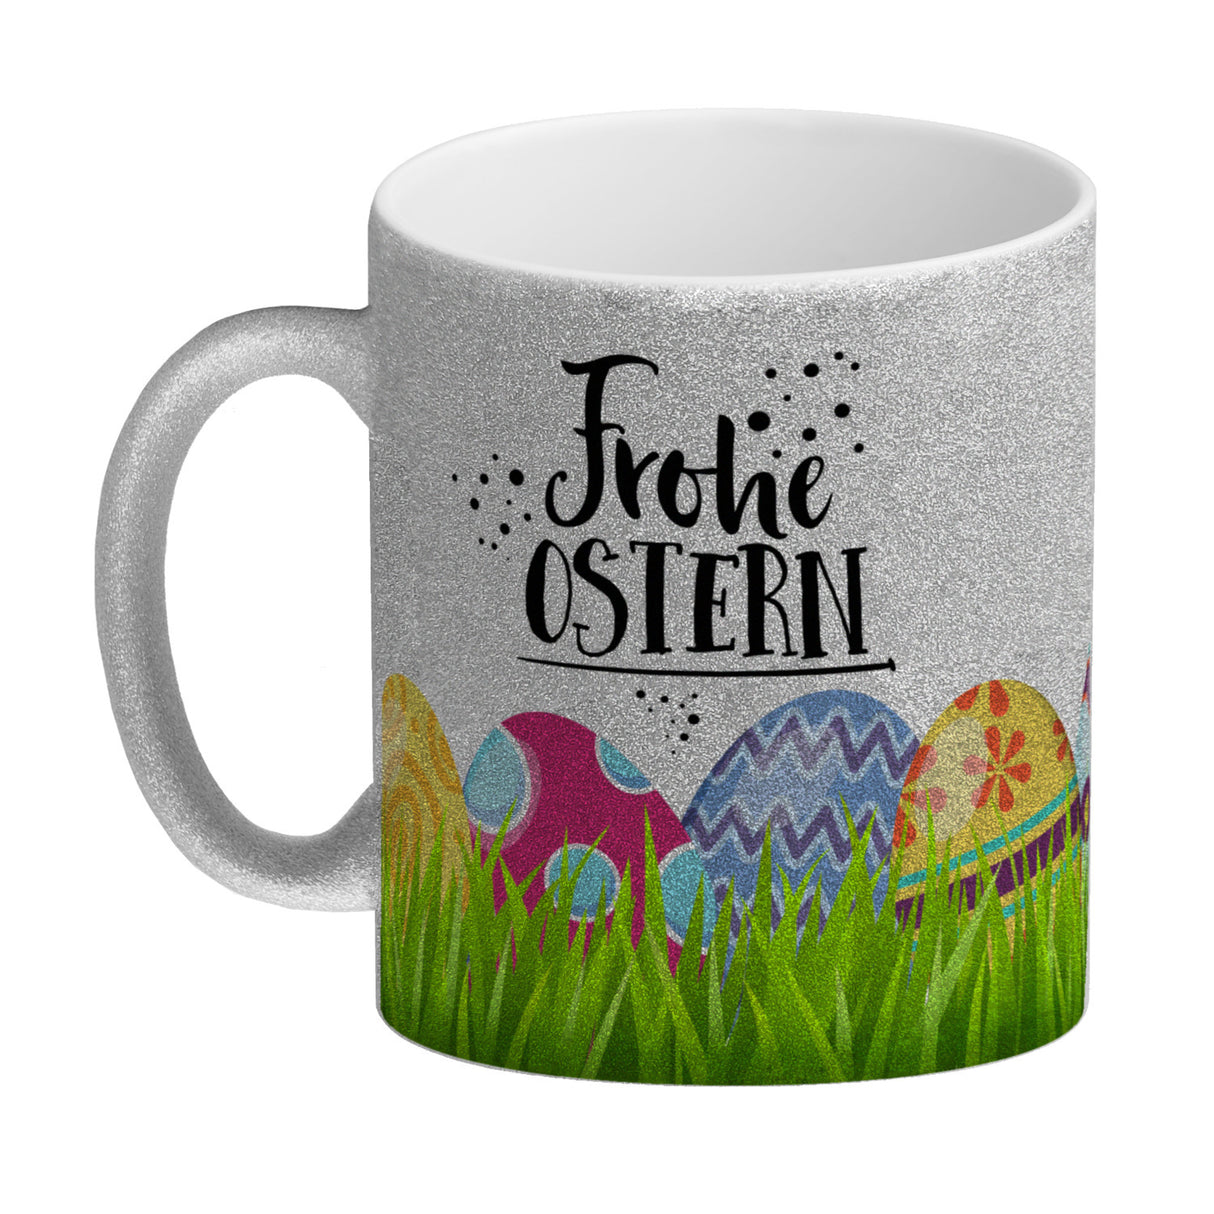 Kaffeebecher mit Spruch: Frohe Ostern